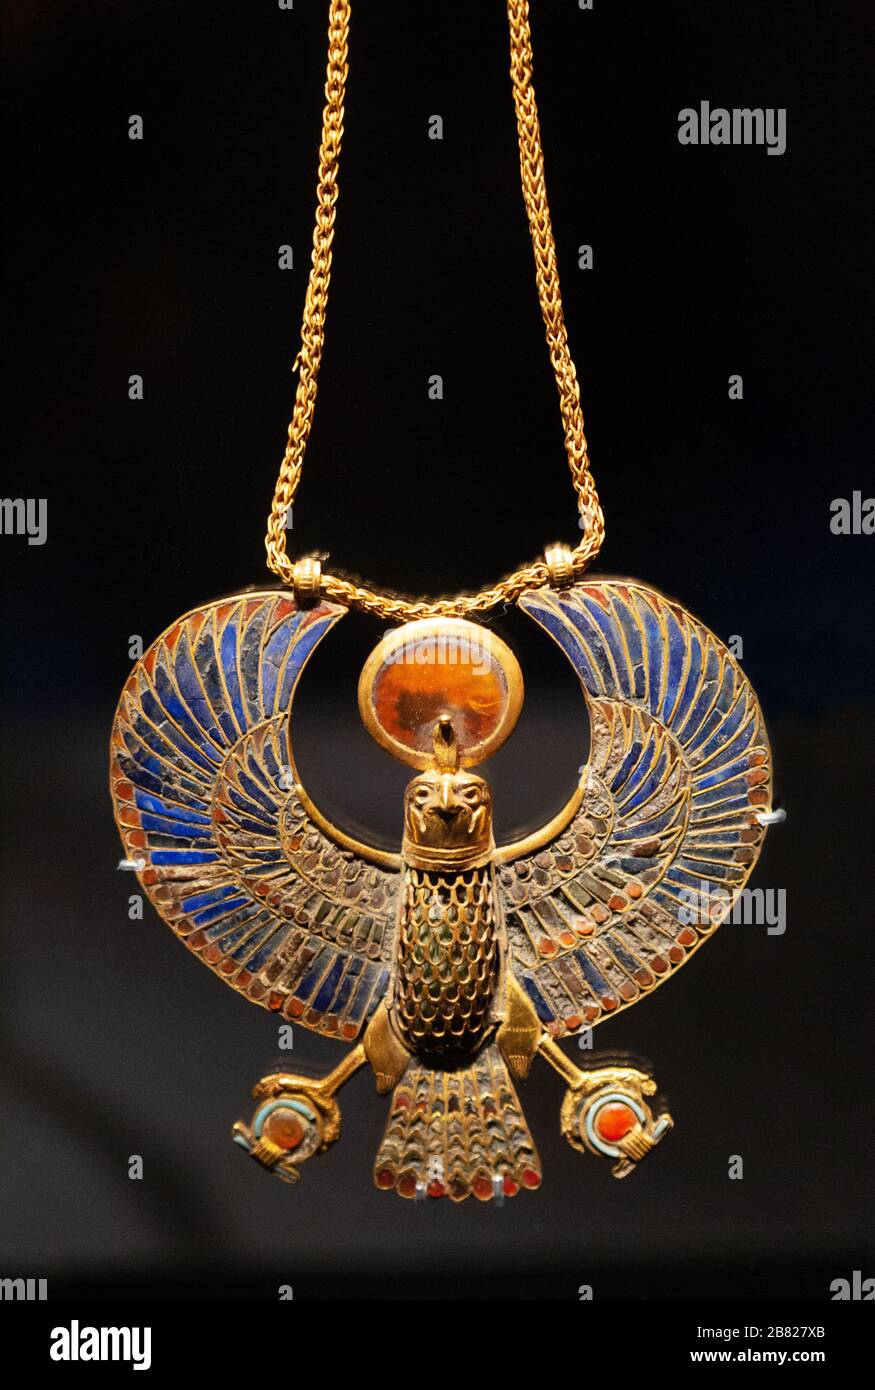 Trésors de Toutankhamun ; pendentif en faucon doré avec bijoux en chaîne d'or du tombeau de Toutankhamuns, histoire égyptienne ancienne Banque D'Images